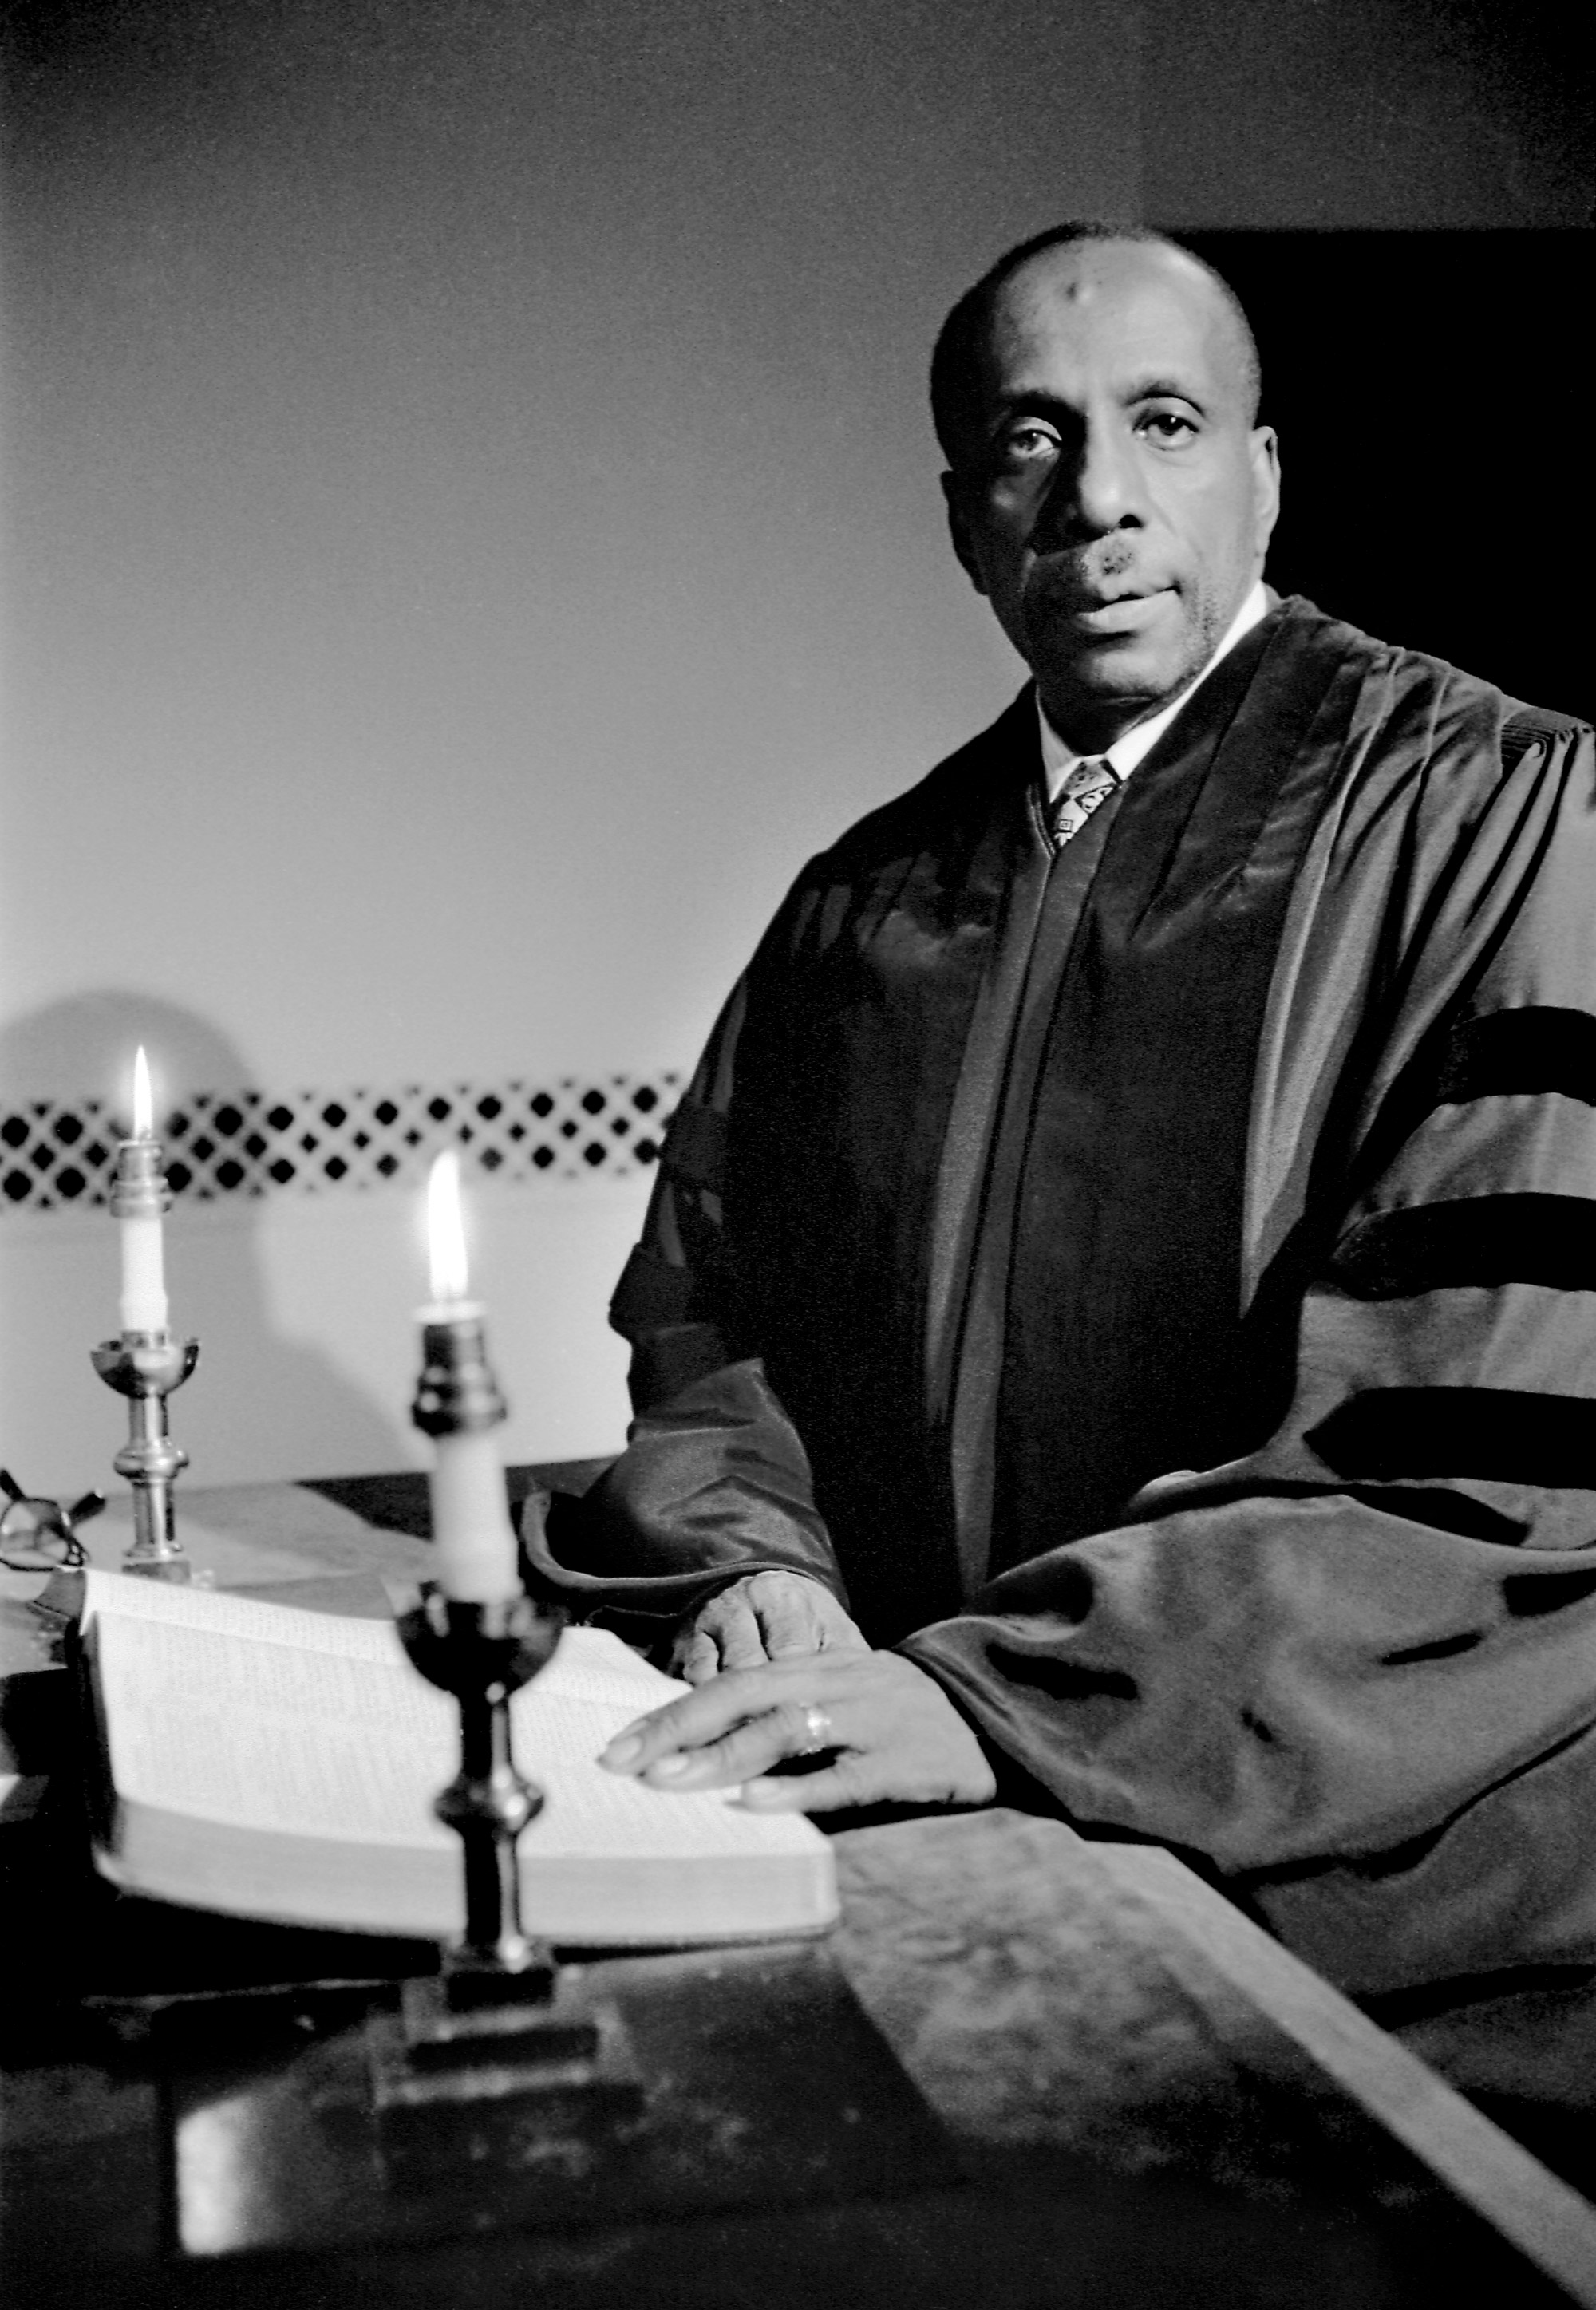 Portrait of Howard Thurman, Dean of Marsh Chapel from 1953 - 1965